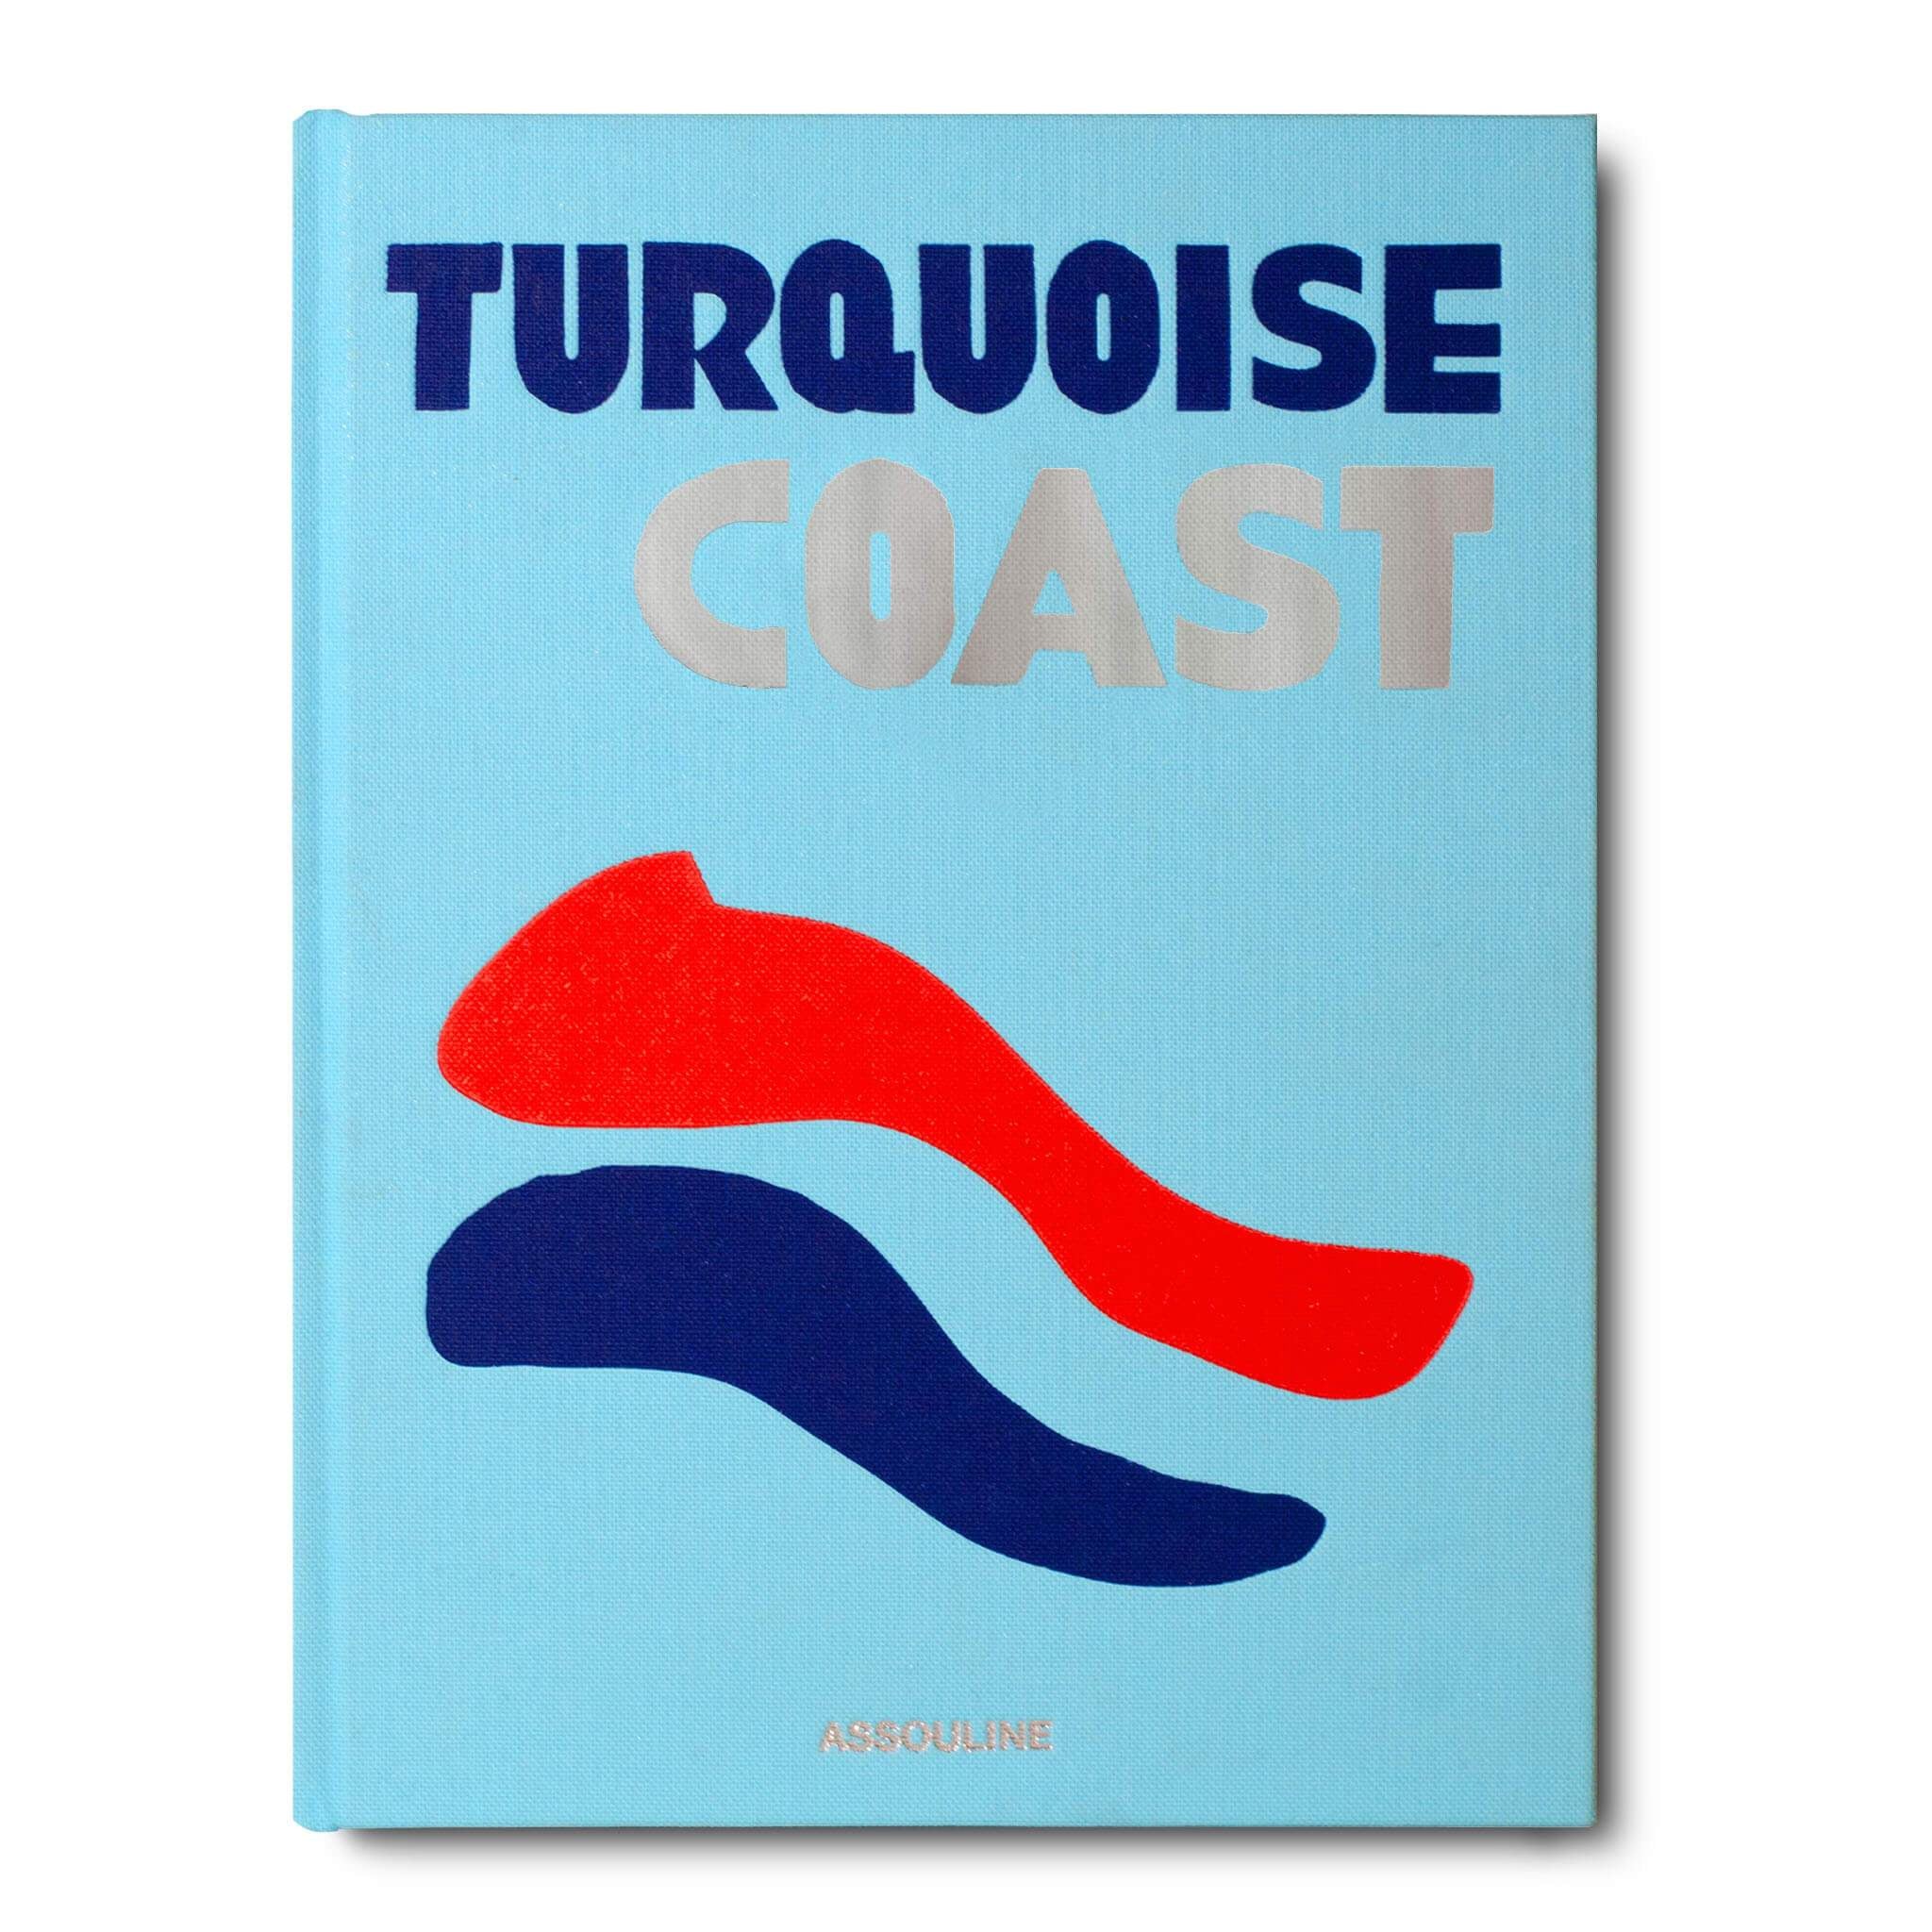 TURQUOISE COAST, libro decorativo de la colección de viajes de la marca Assouline